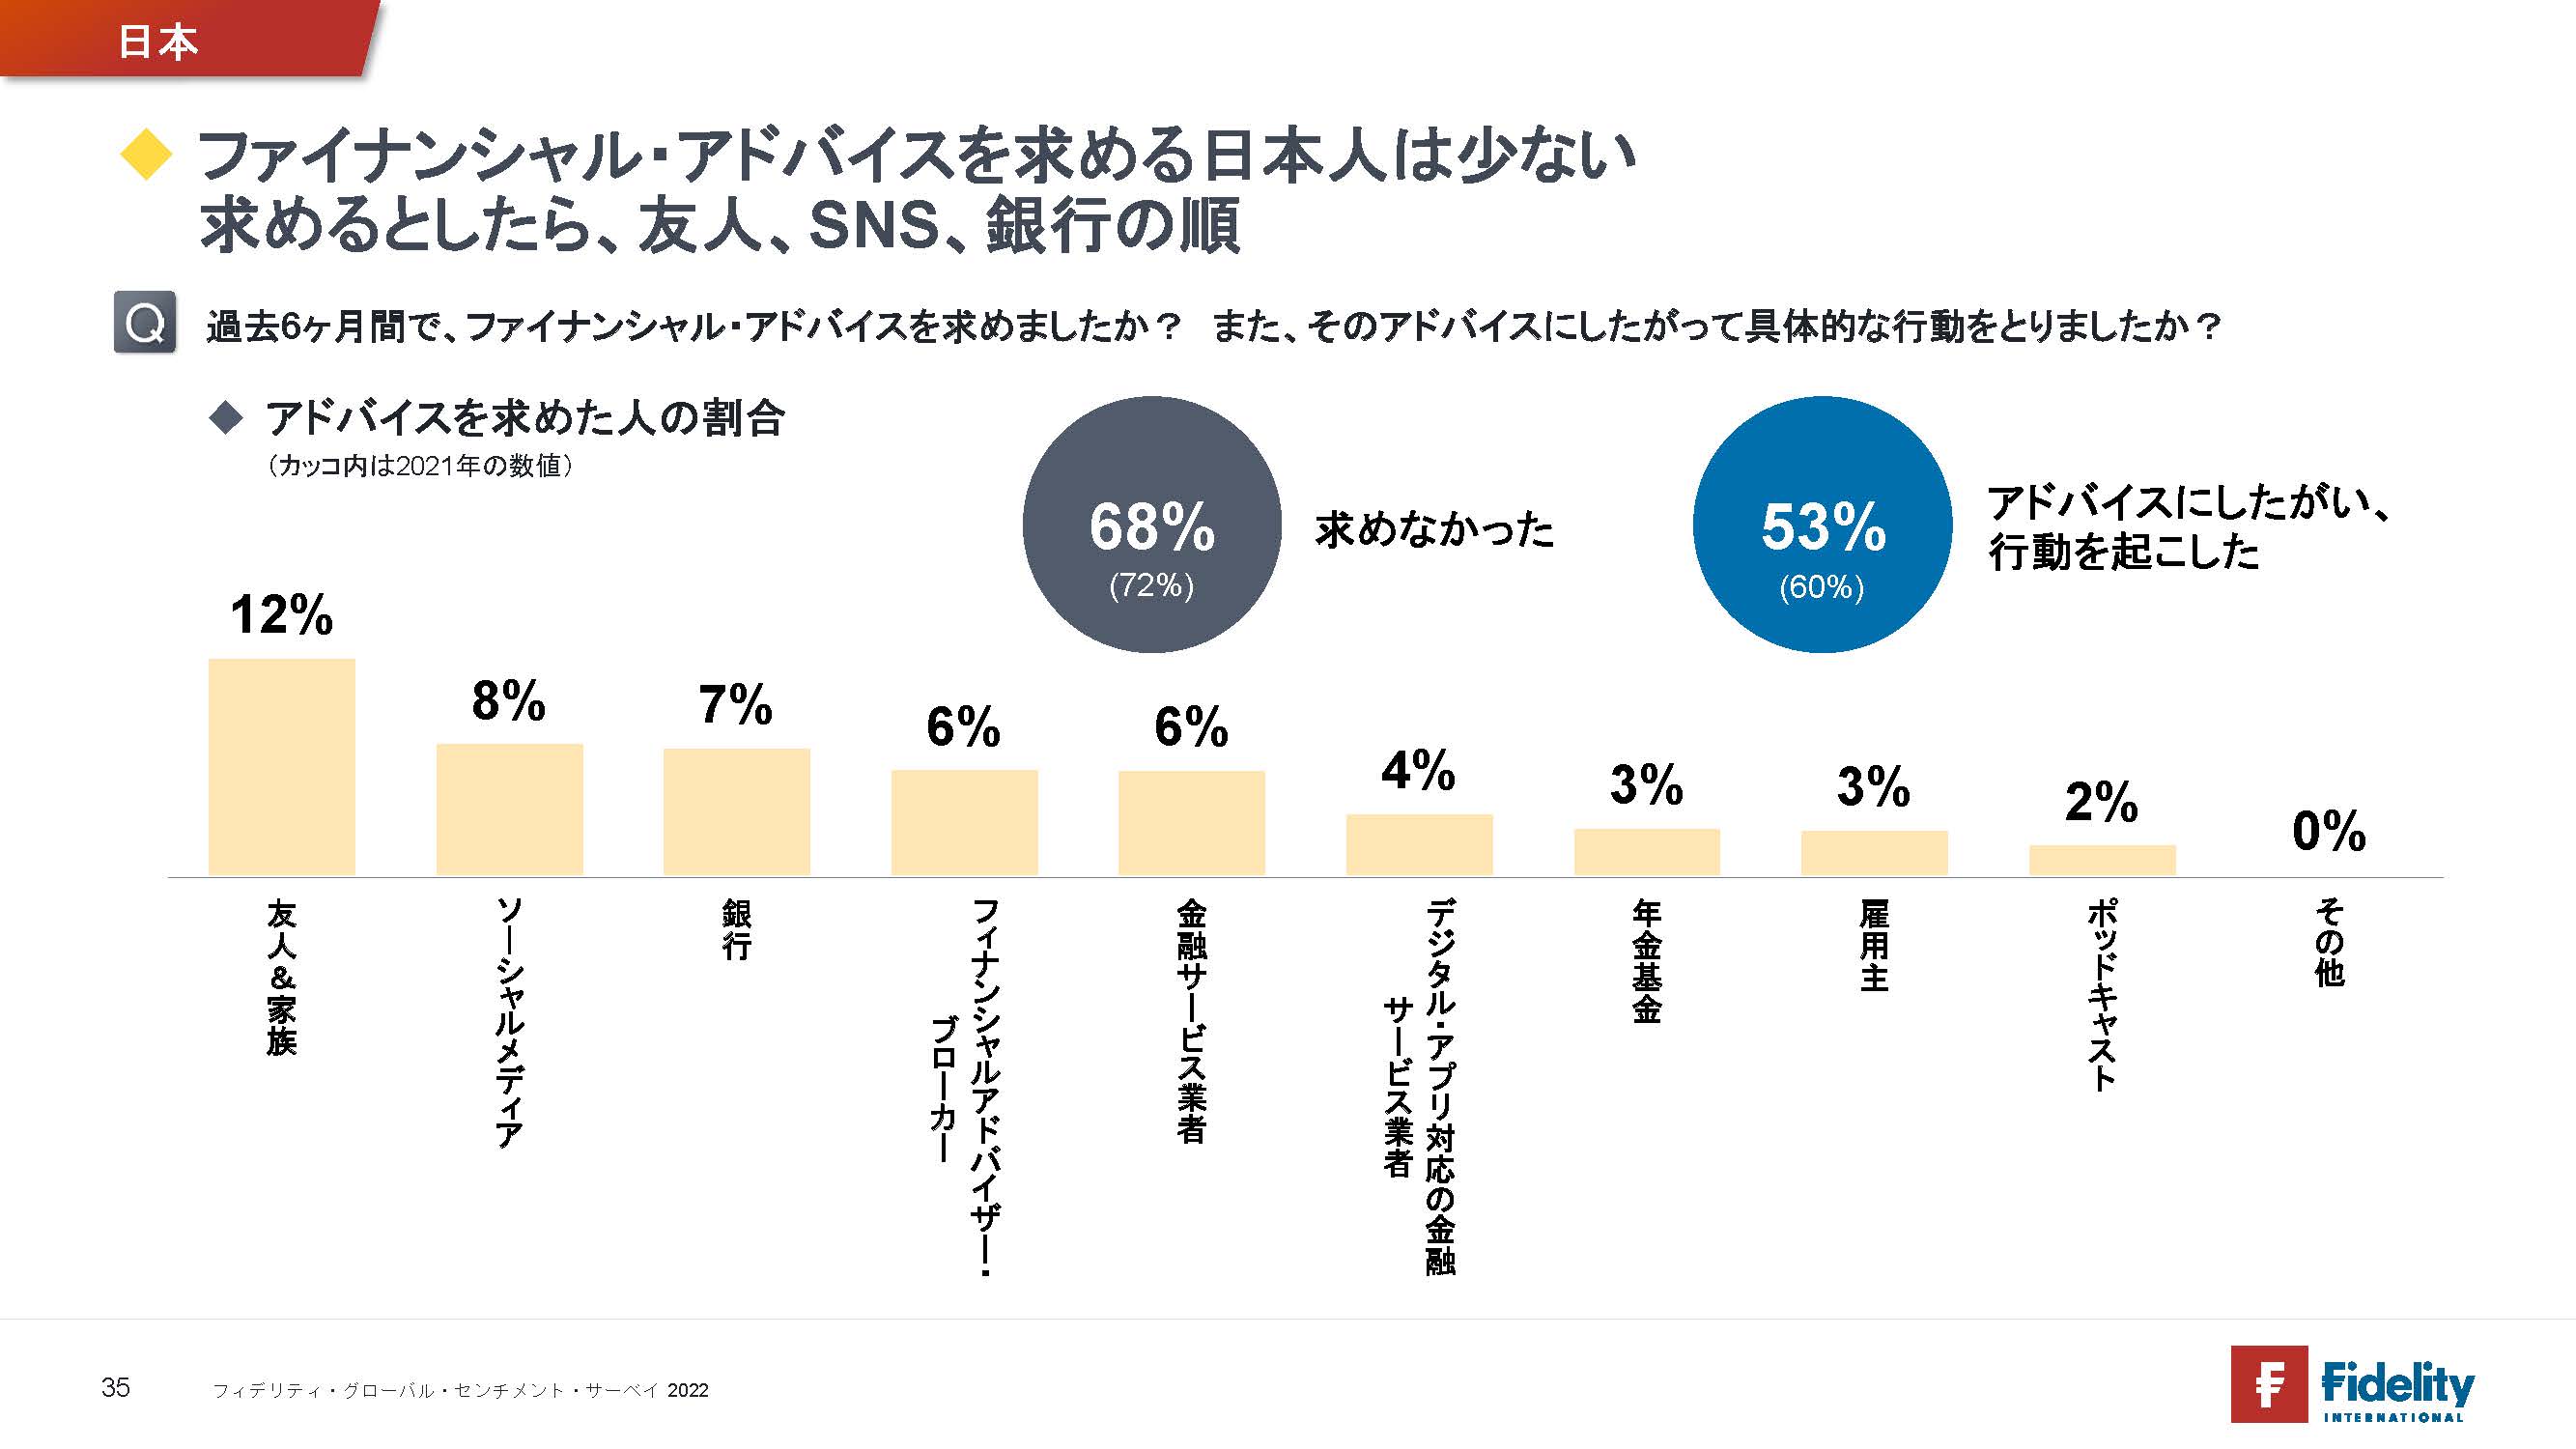 ファイナンシャル・アドバイスを求める日本人は少ない 求めるとしたら、友人、SNS、銀行の順